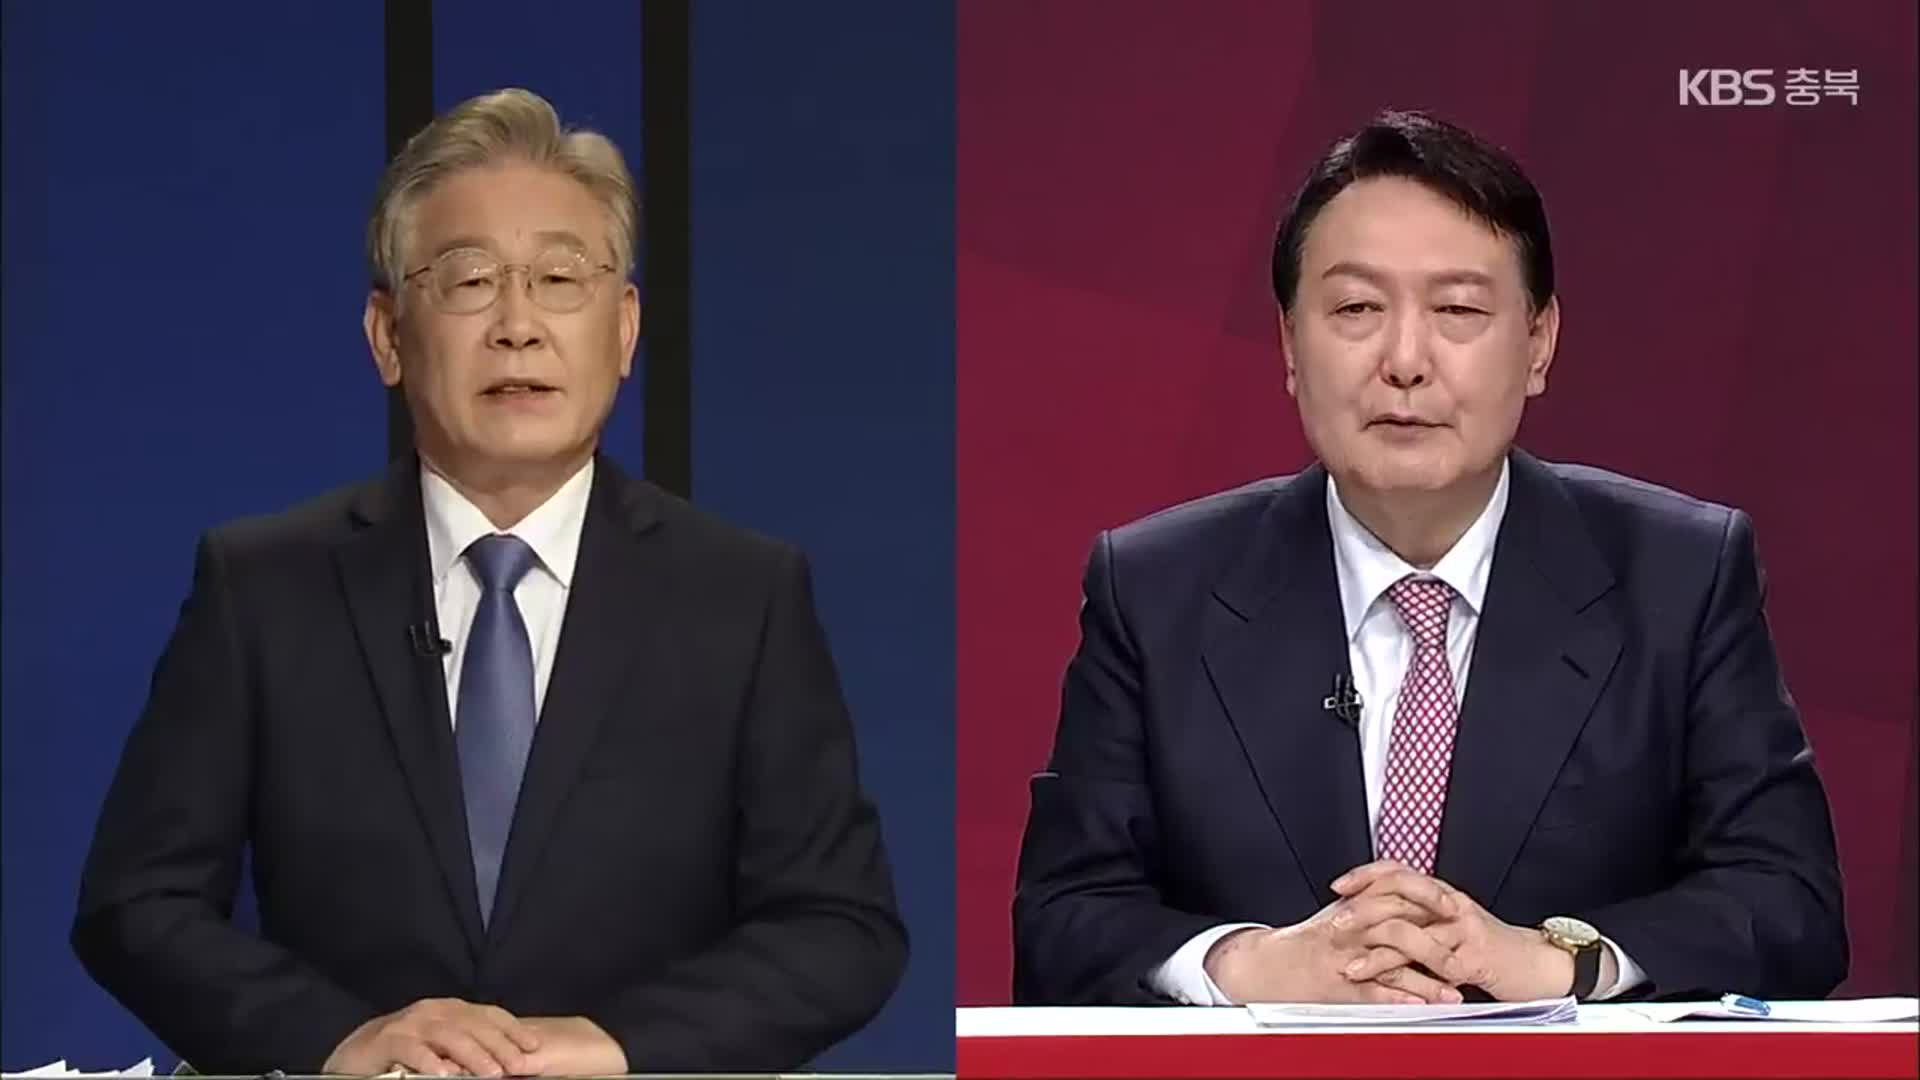 “이재명-윤석열 양자 TV토론 불가”…곧 다자토론 실무 협상